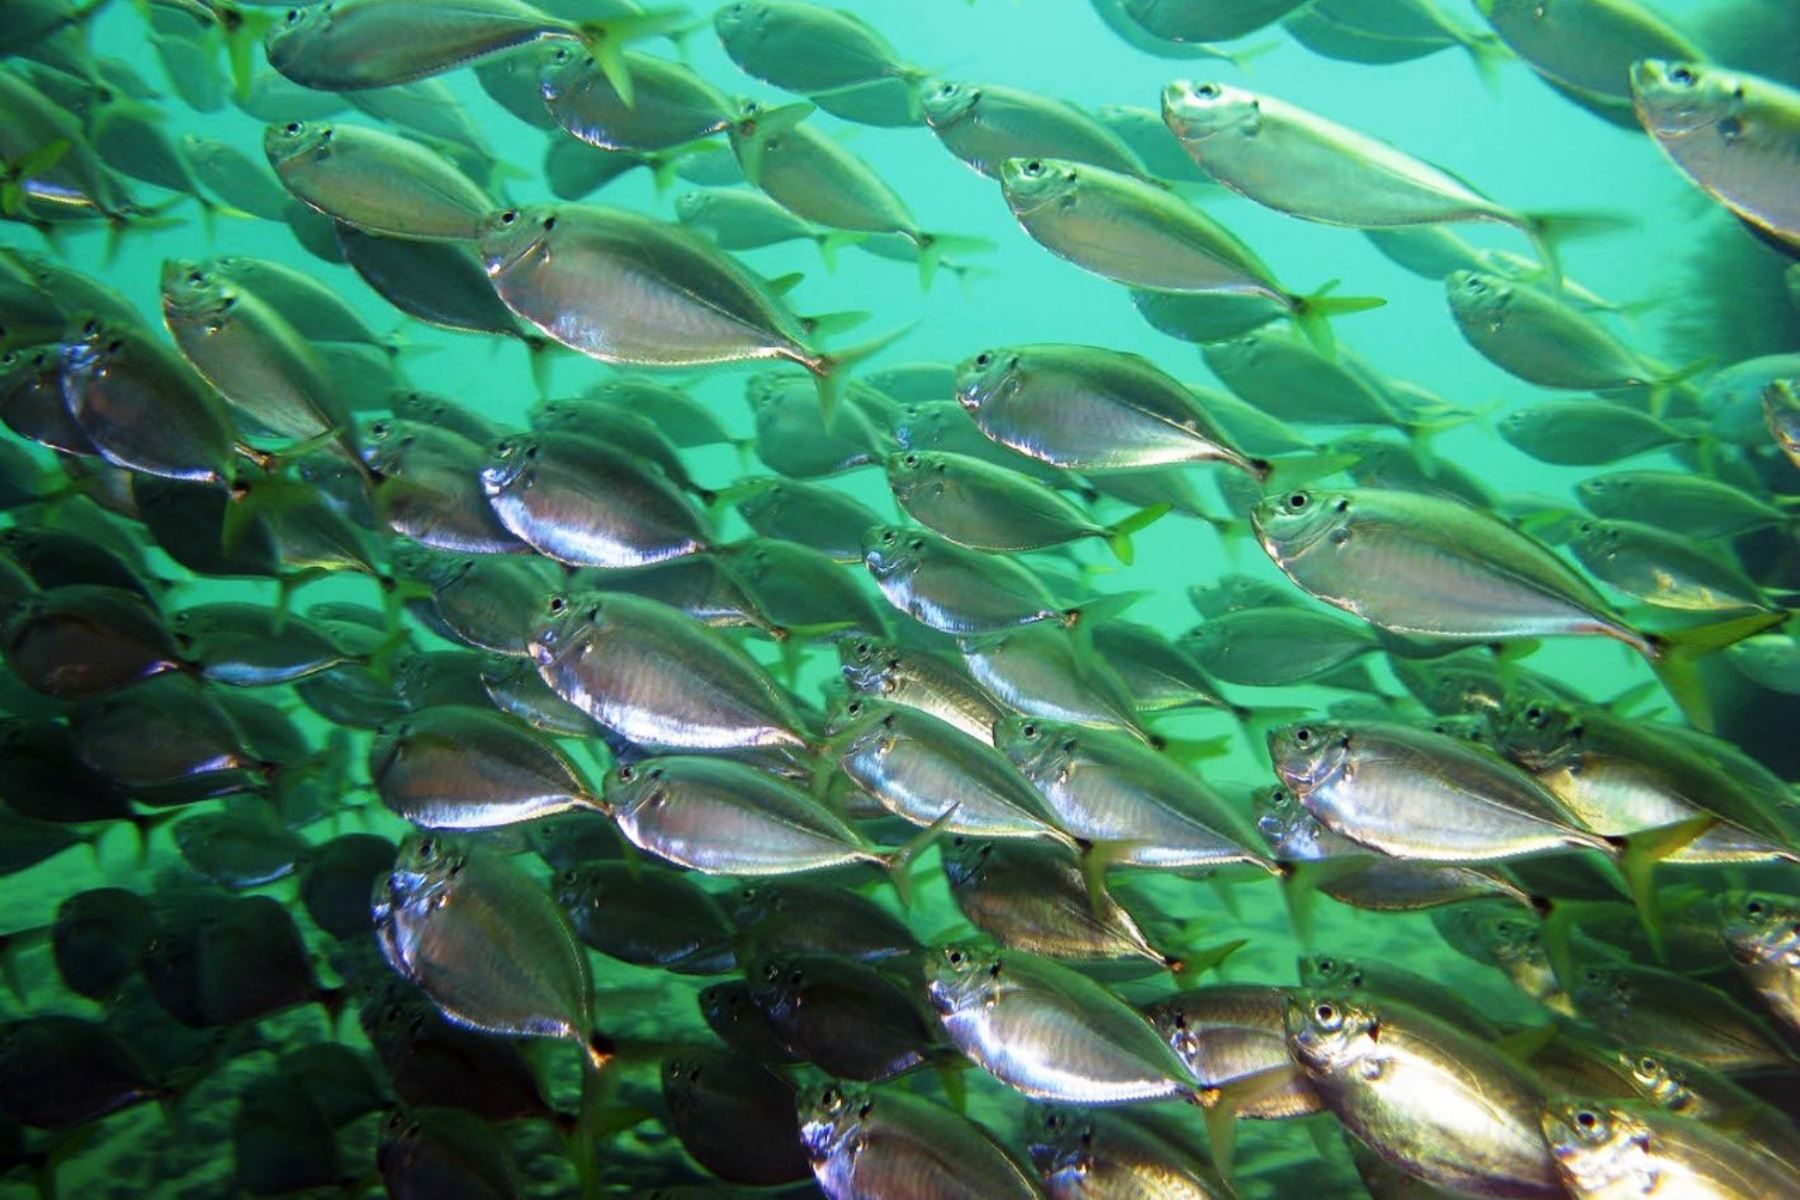 Biodiversidad marina se redujo en 49% por sobrepesca y contaminación del plástico. Foto: ANDINA/Yuri Hooker